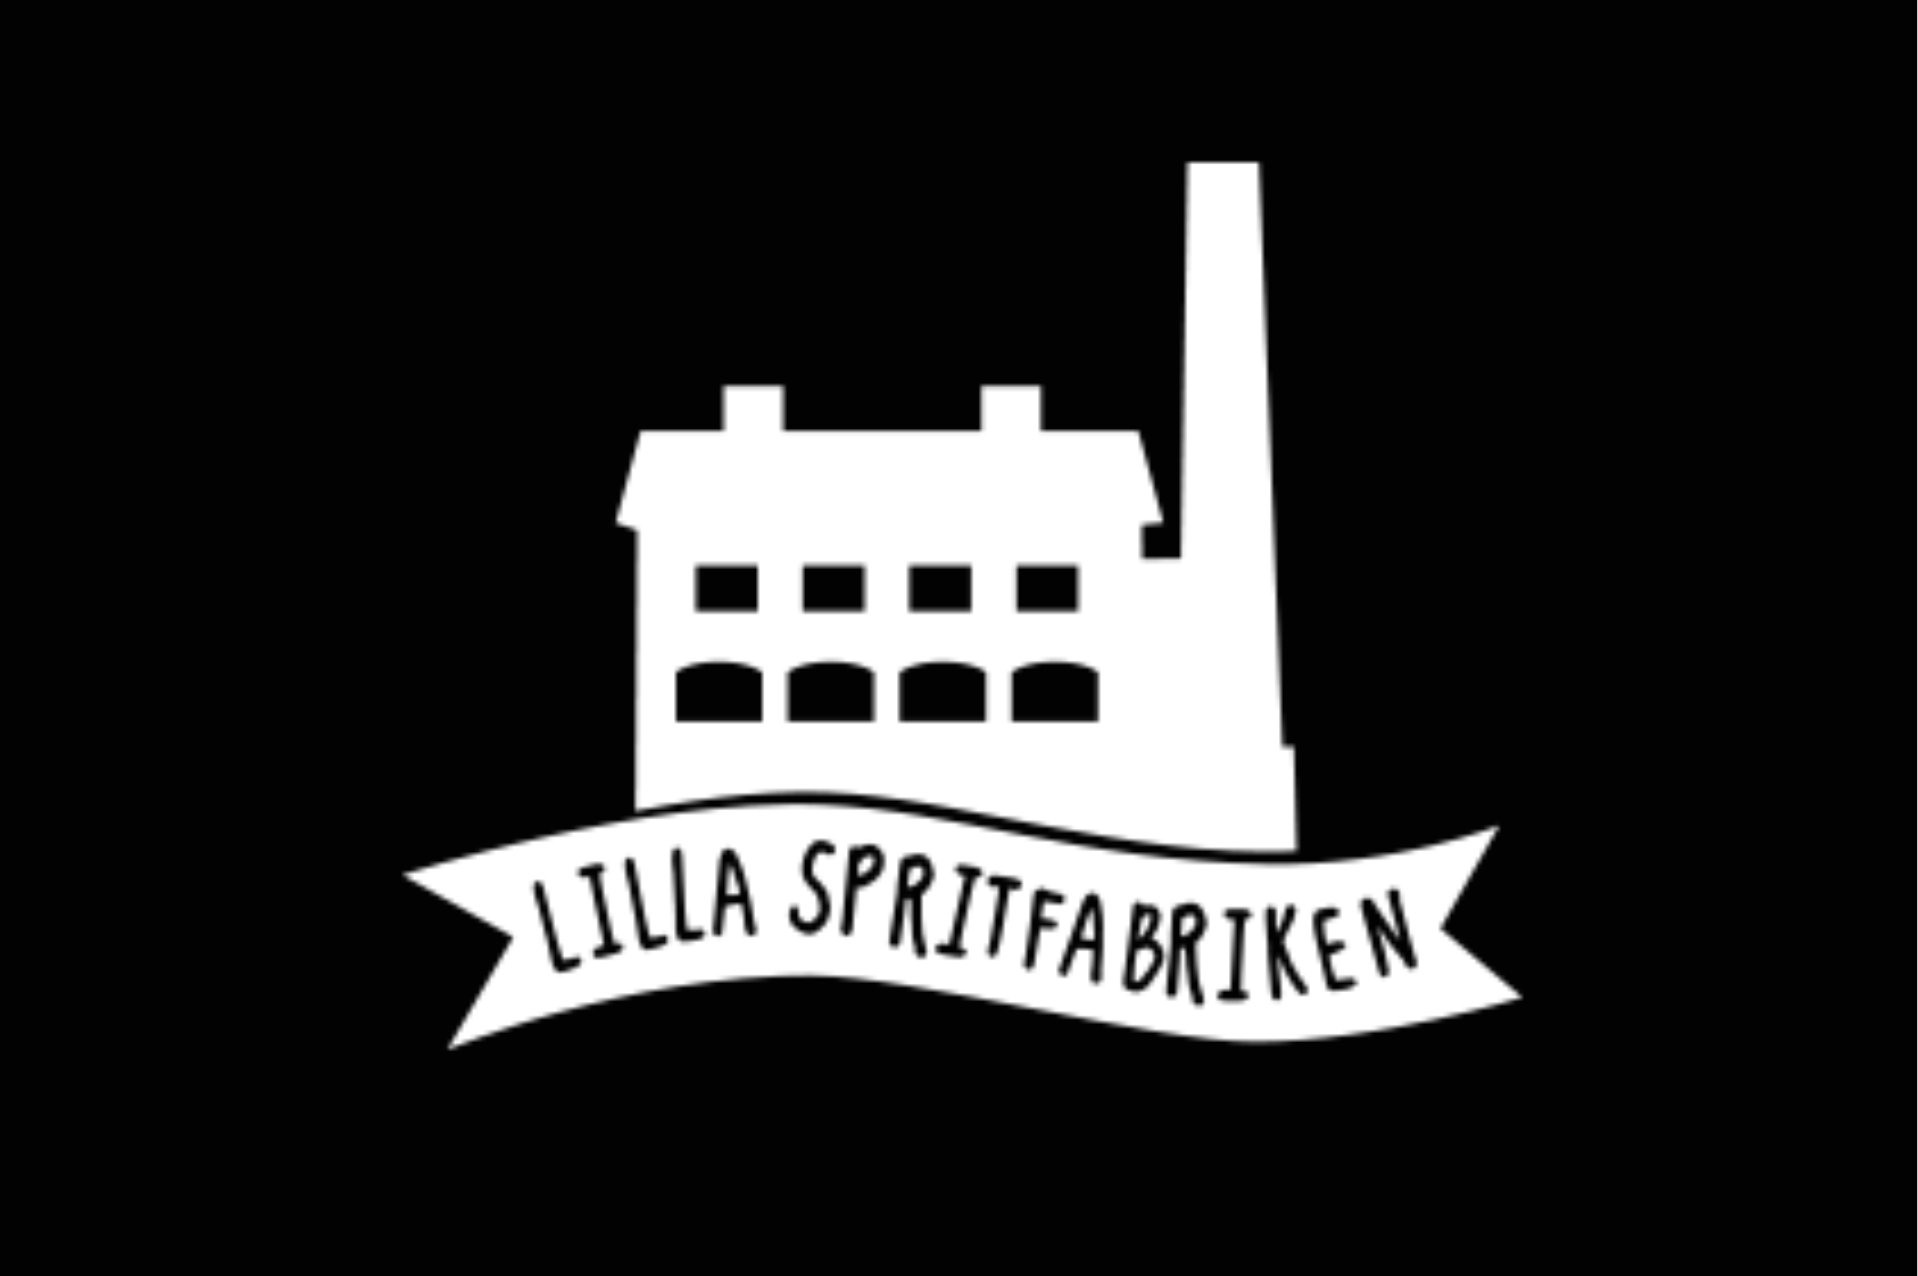 Lilla Spritfabriken